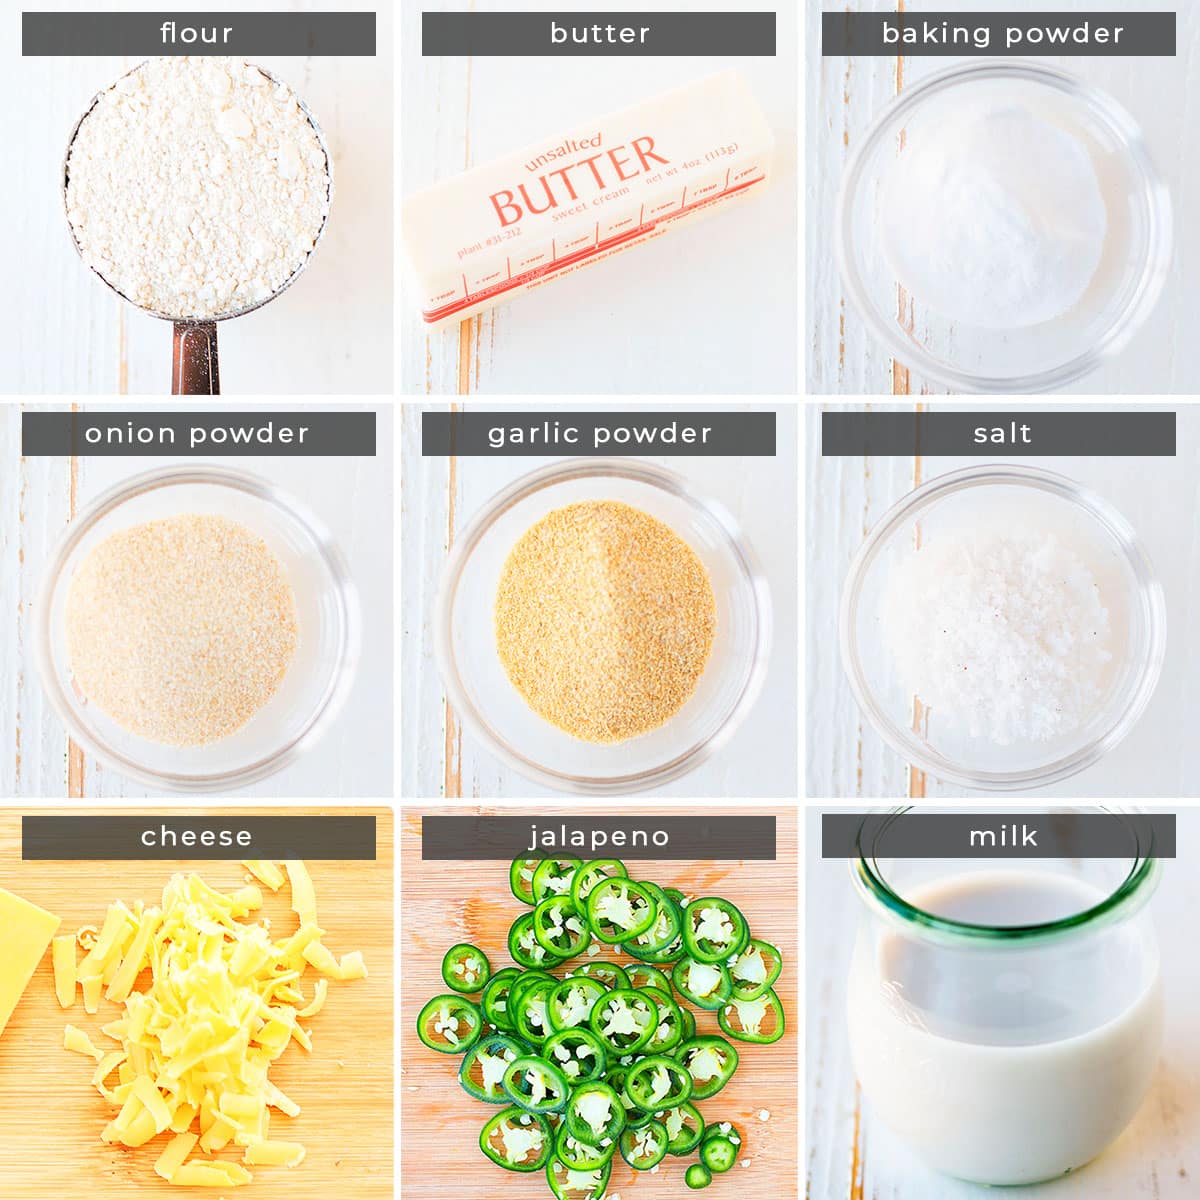 Image showing recipe ingredients flour, butter, baking powder, onion powder, garlic powder, salt, cheese, jalapenos, and milk.